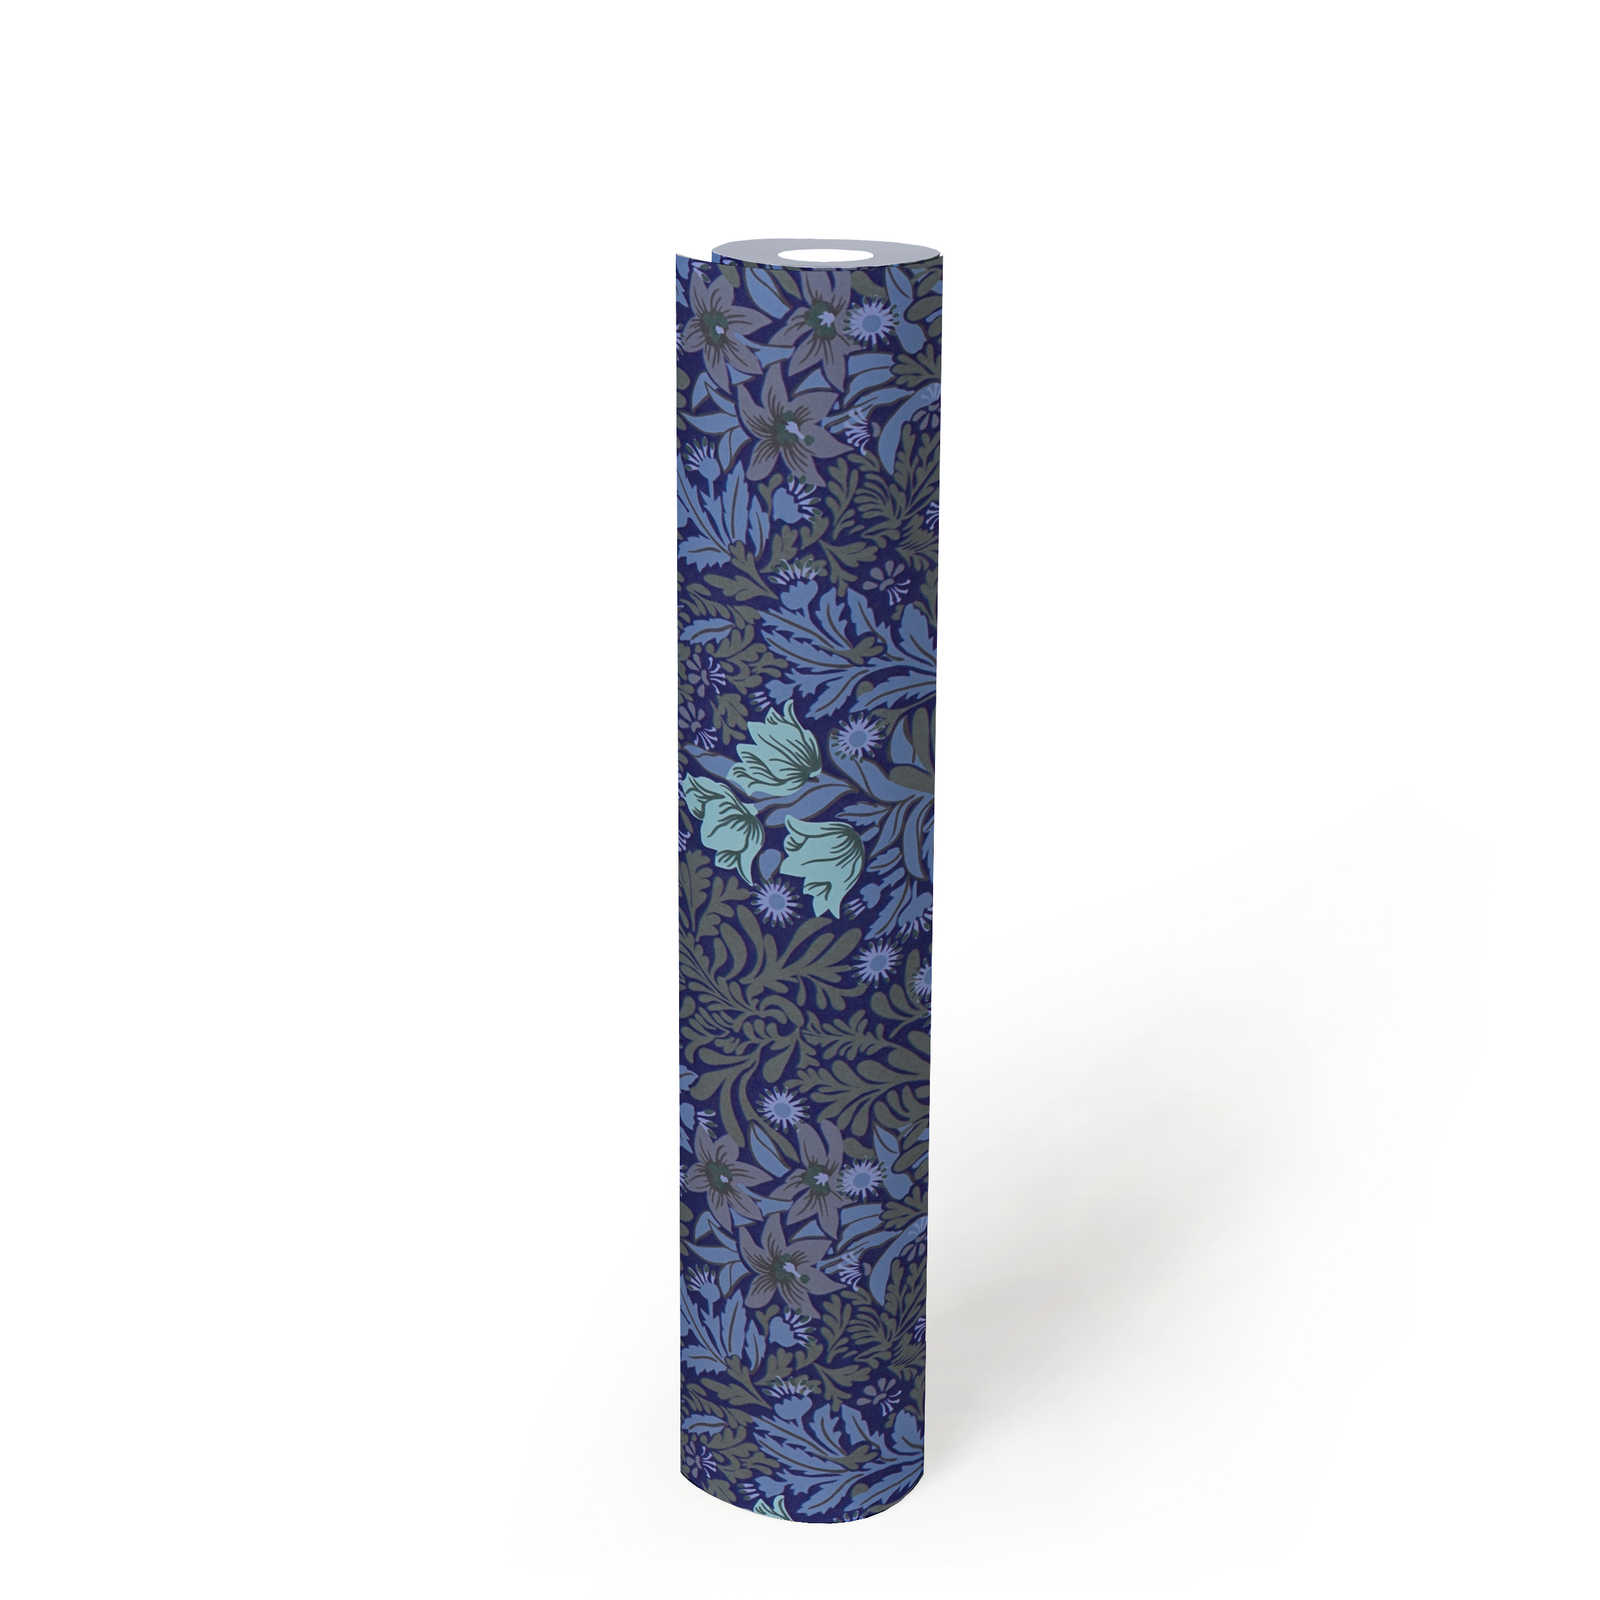             Bloemrijkvliesbehang met bladranken en bloemen - blauw, grijs, groen
        